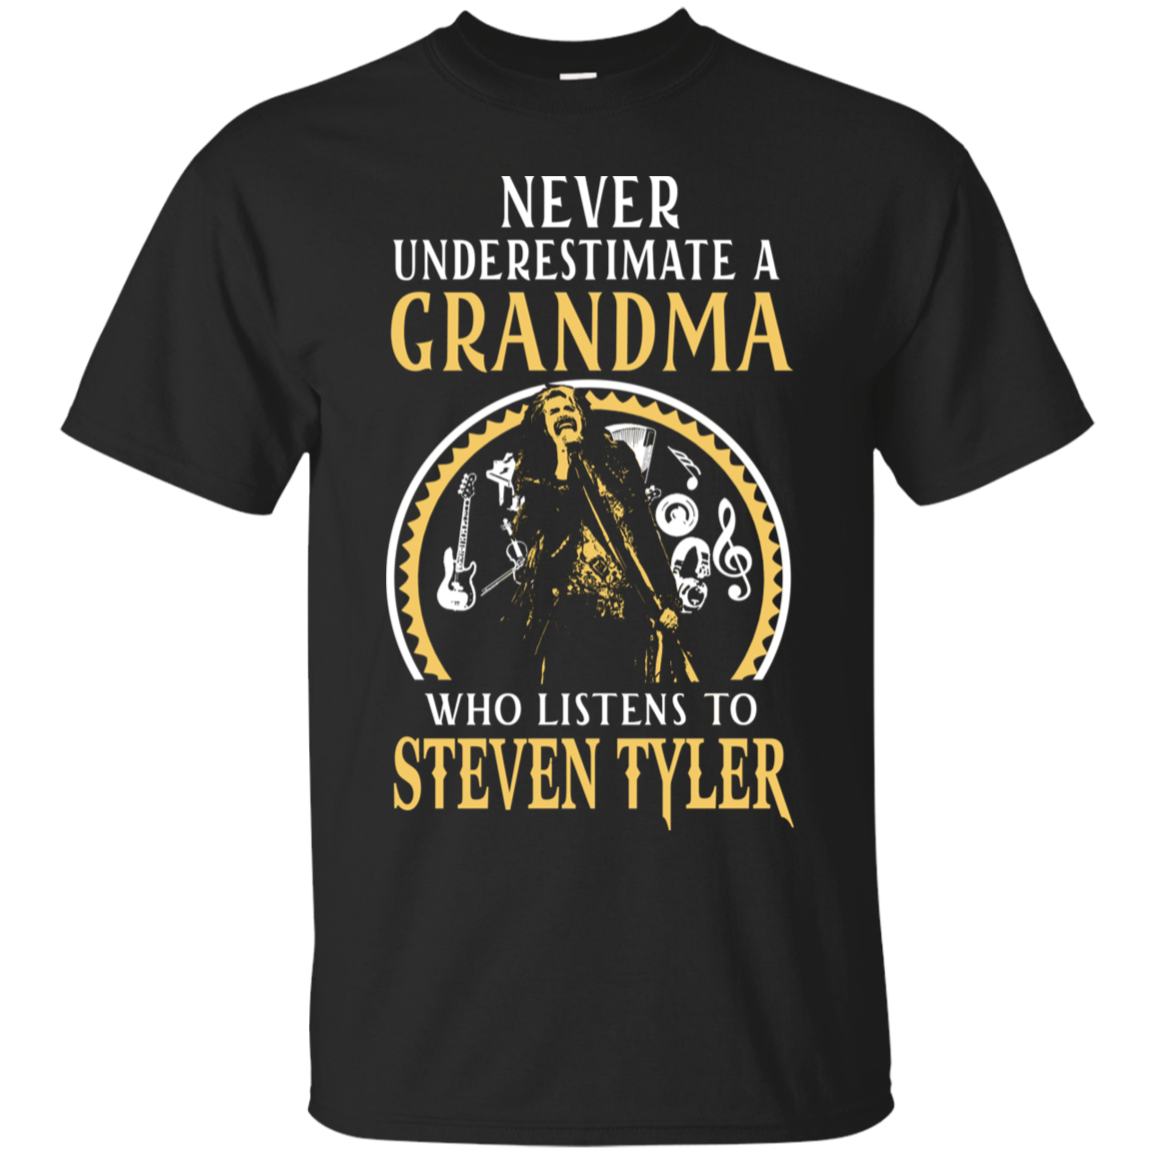 Steven Tyler Grandma Shirts Grandma Listens To Steven Tyler - Teesmiley